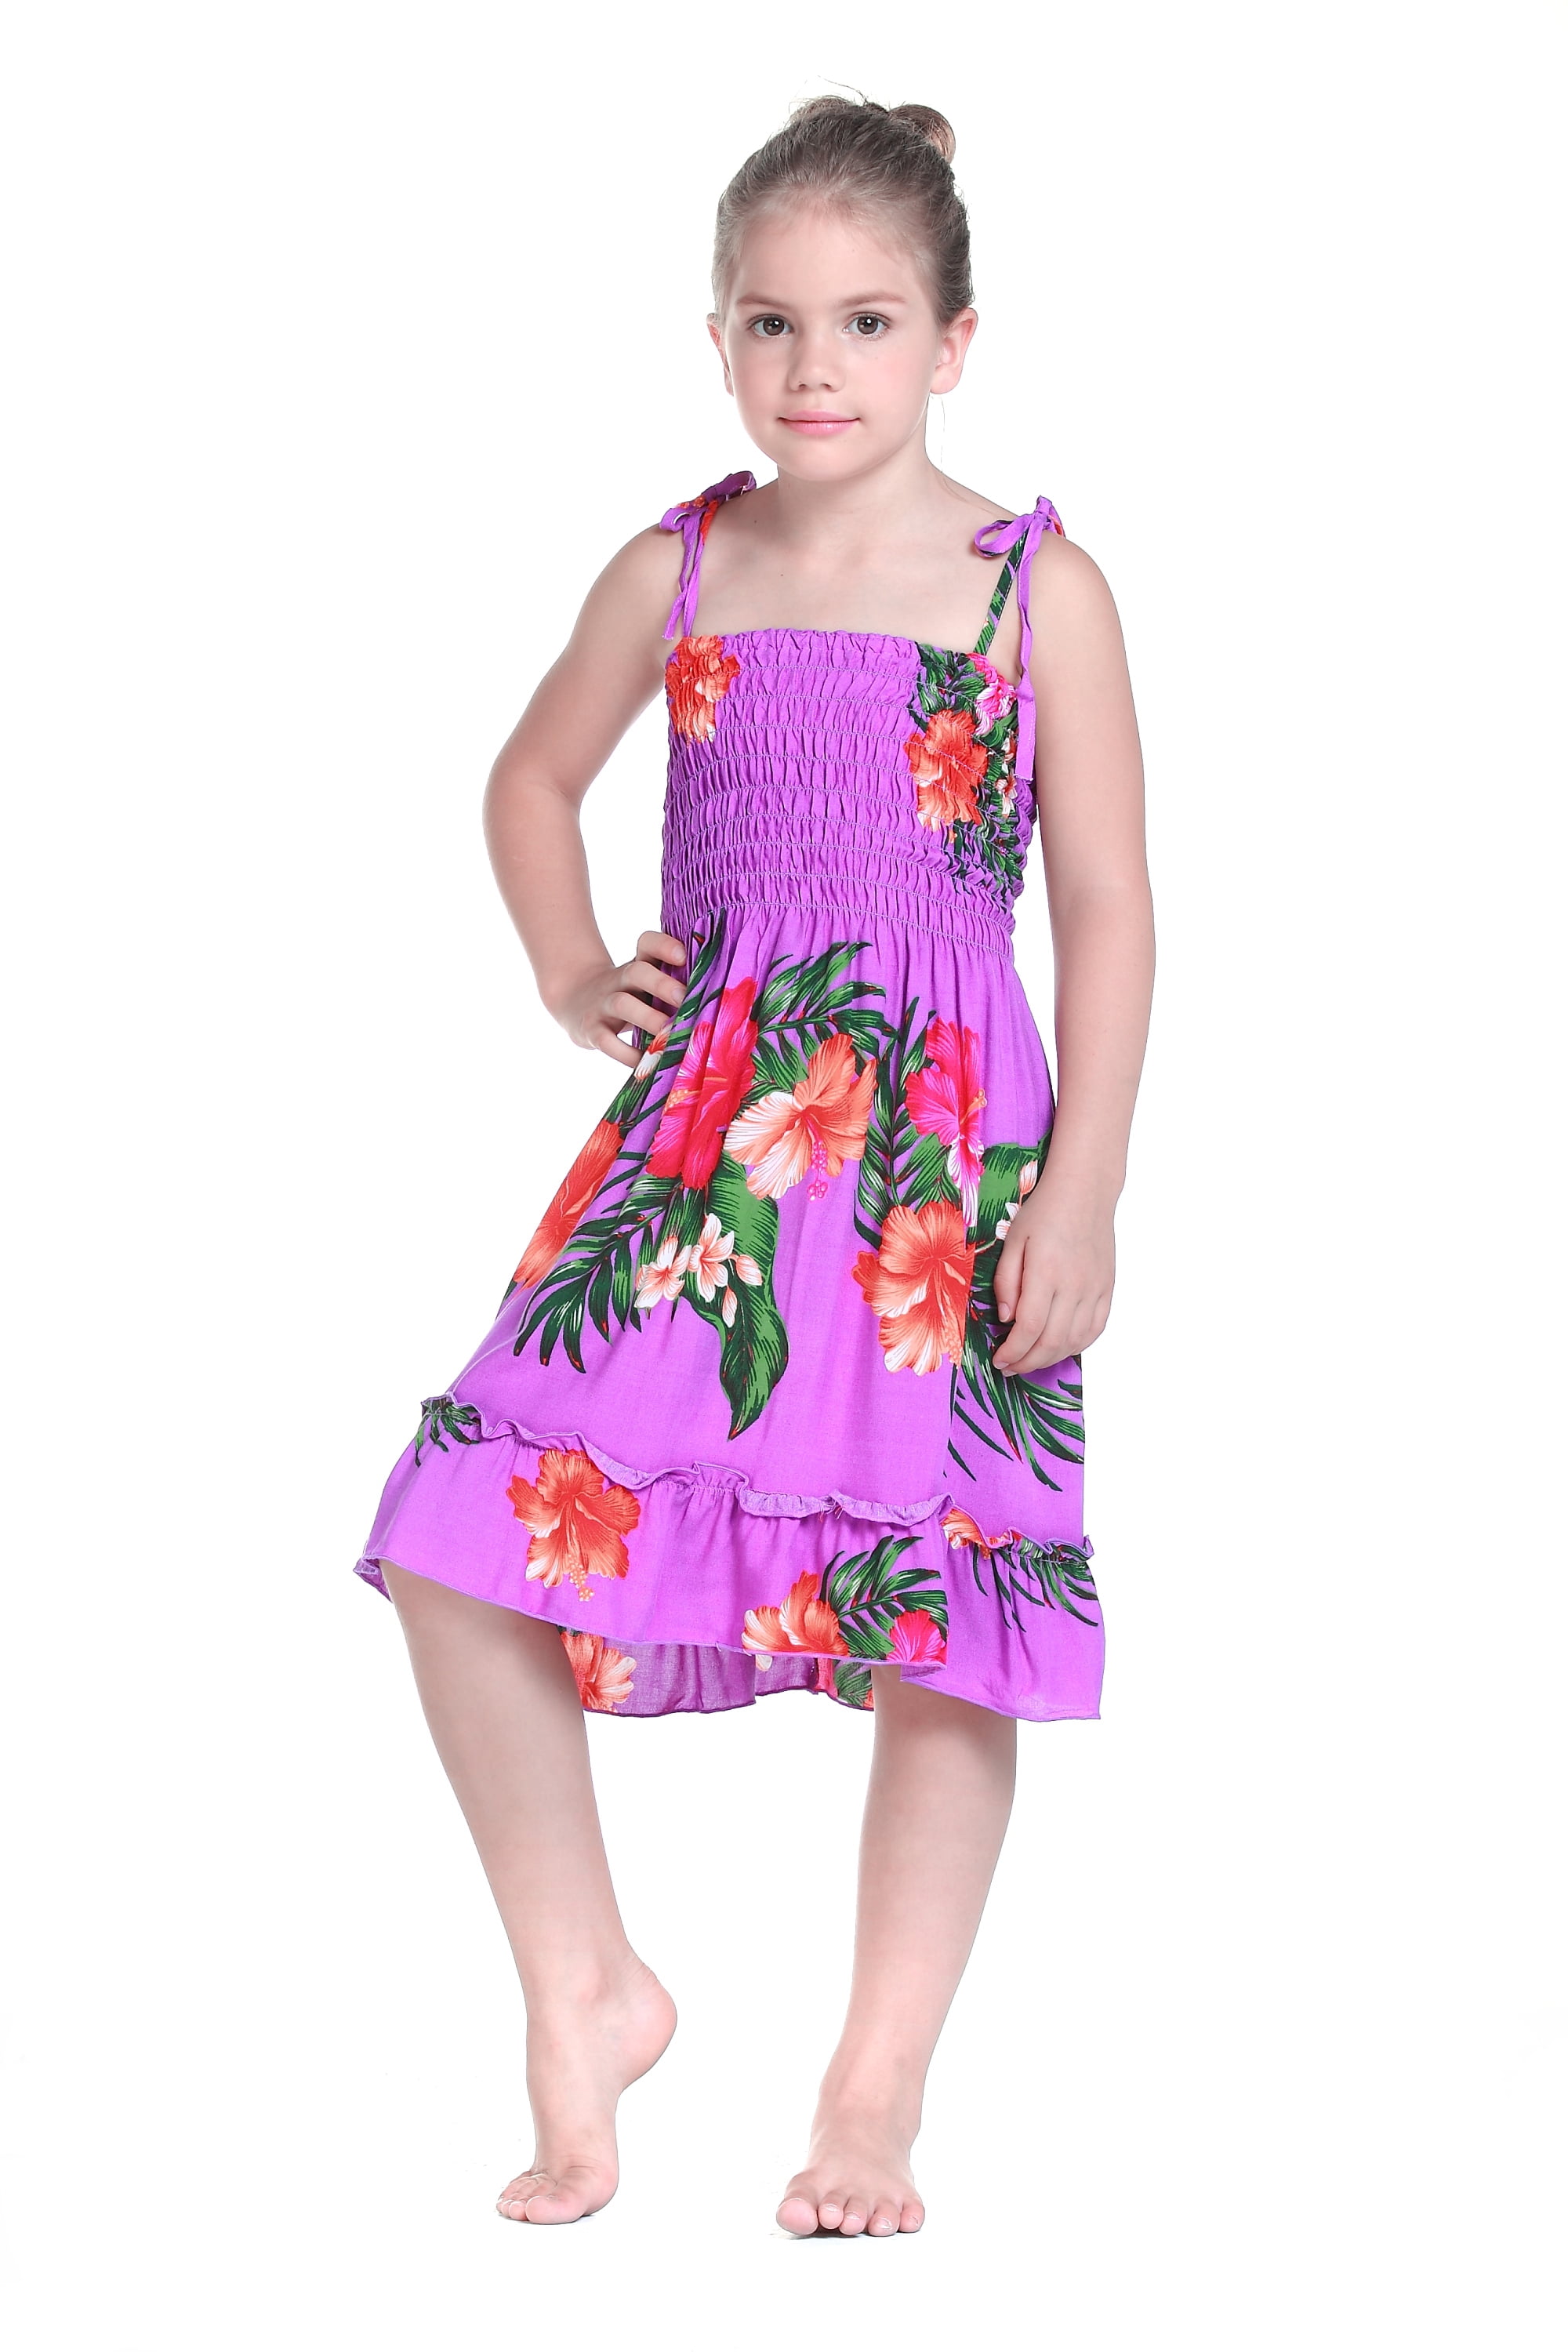 Girl Elastic Ruffle Hawaiian Luau Dress in Purple Floral 2T - Walmart.com